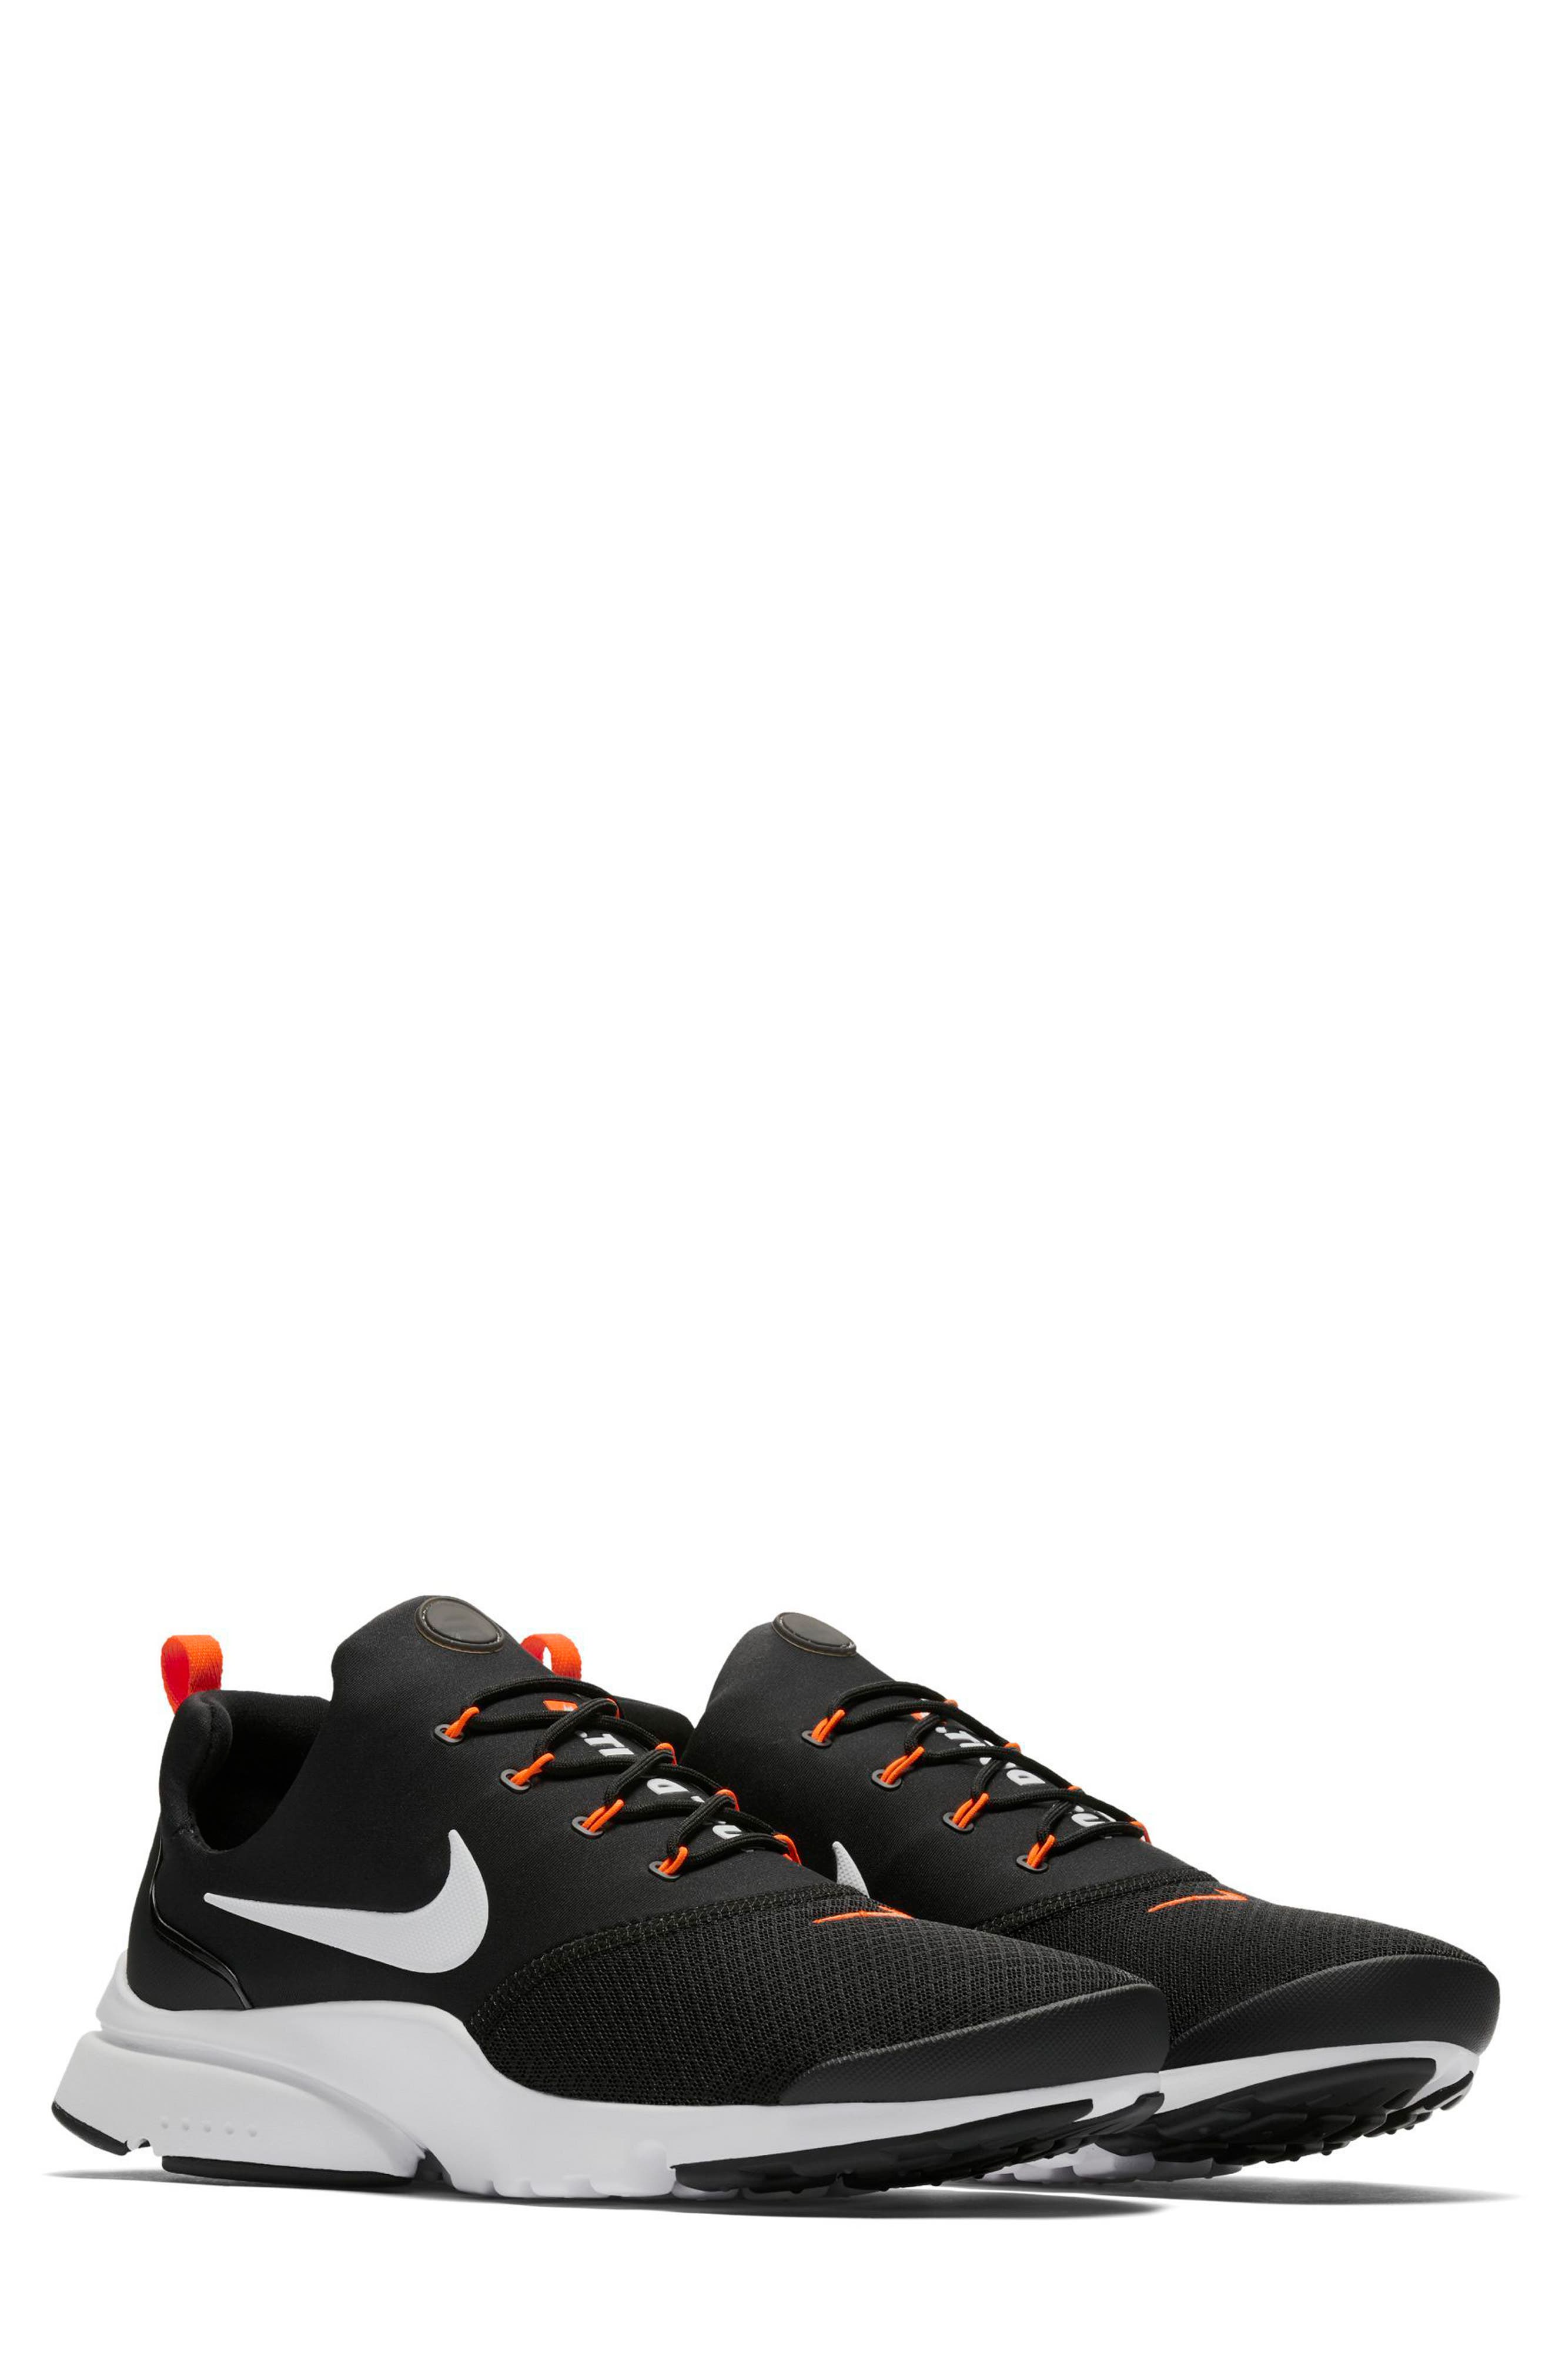 UPC 884751001796 product image for Men's Nike Presto Fly Sneaker, Size 10.5 M - Black | upcitemdb.com